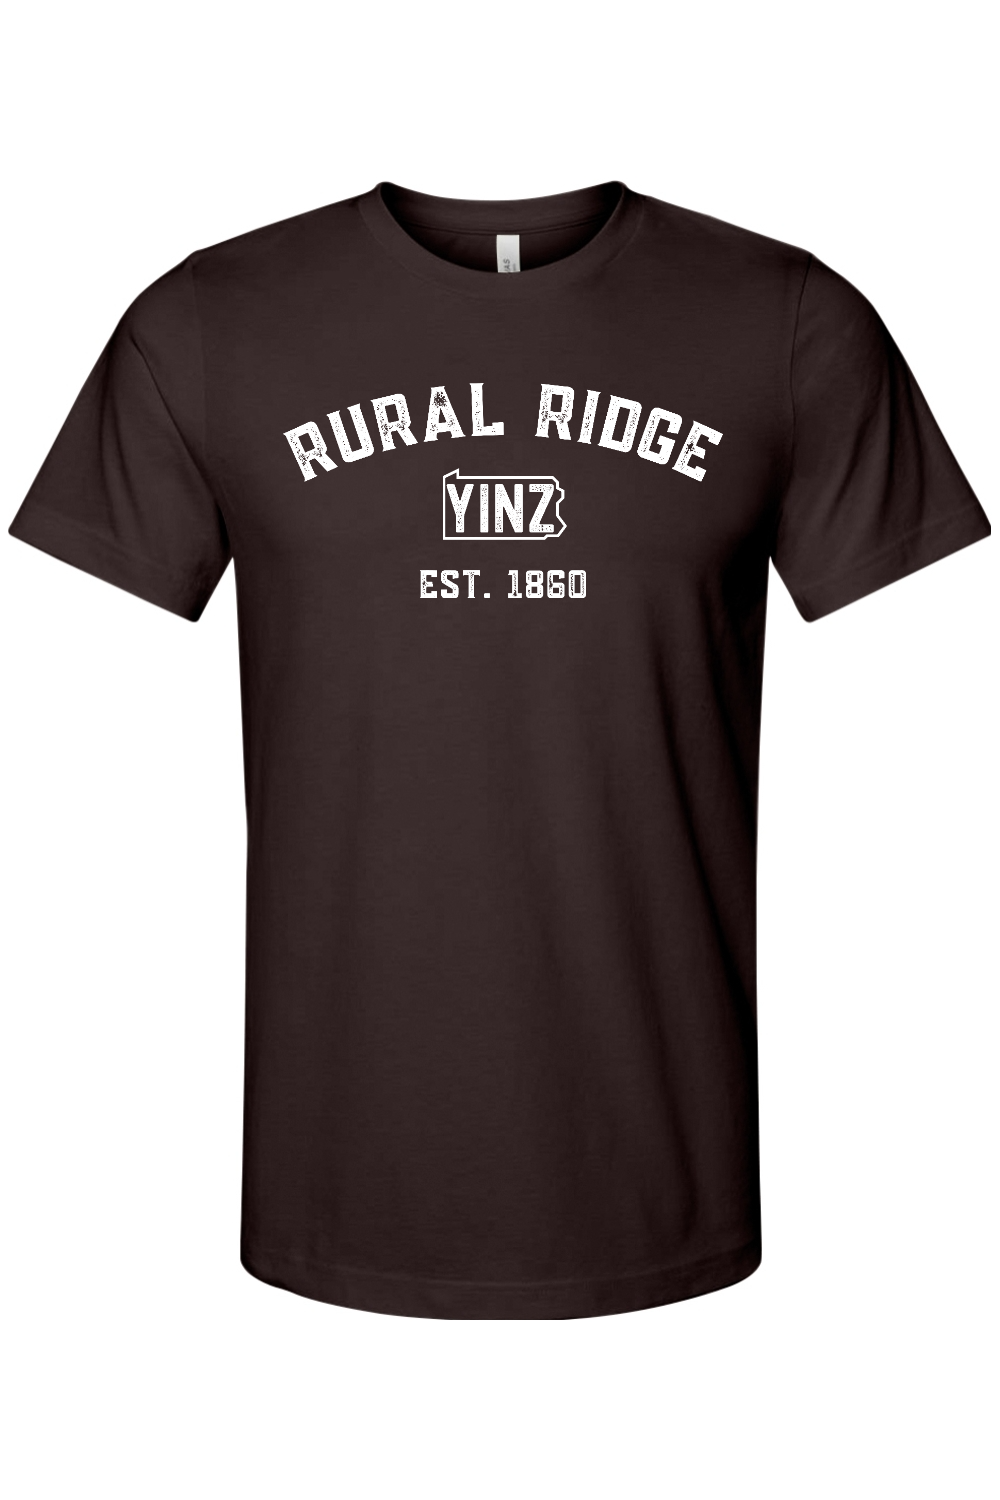 Rural Ridge Yinzylvania - Yinzylvania